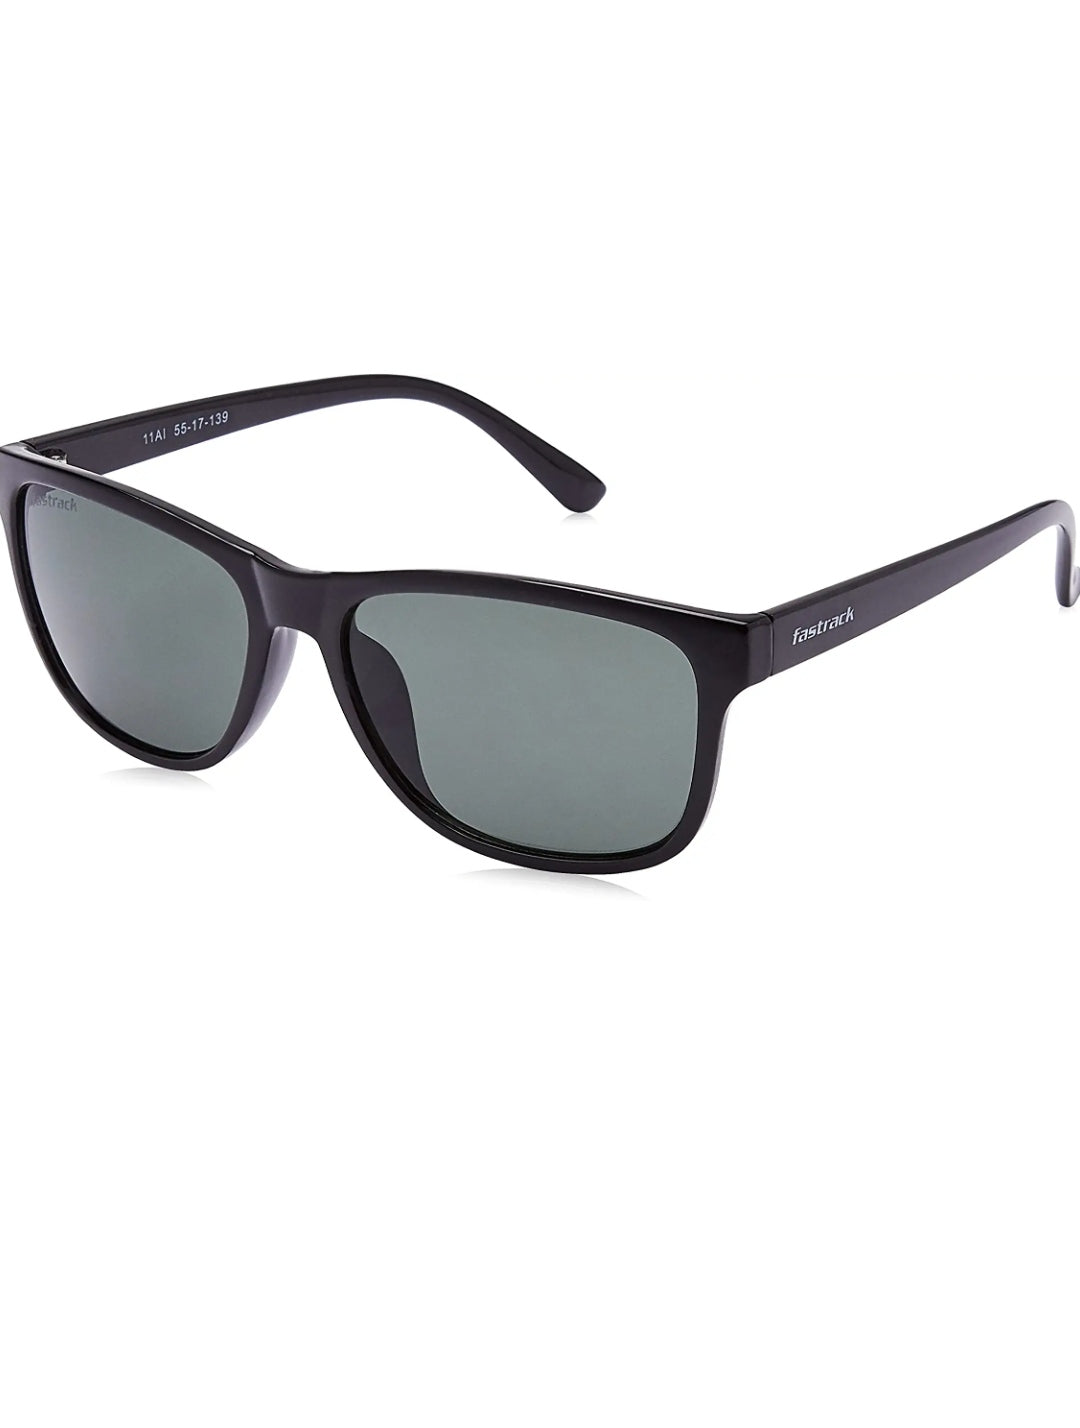 Fastrack Black Sunglasses for Men and Women